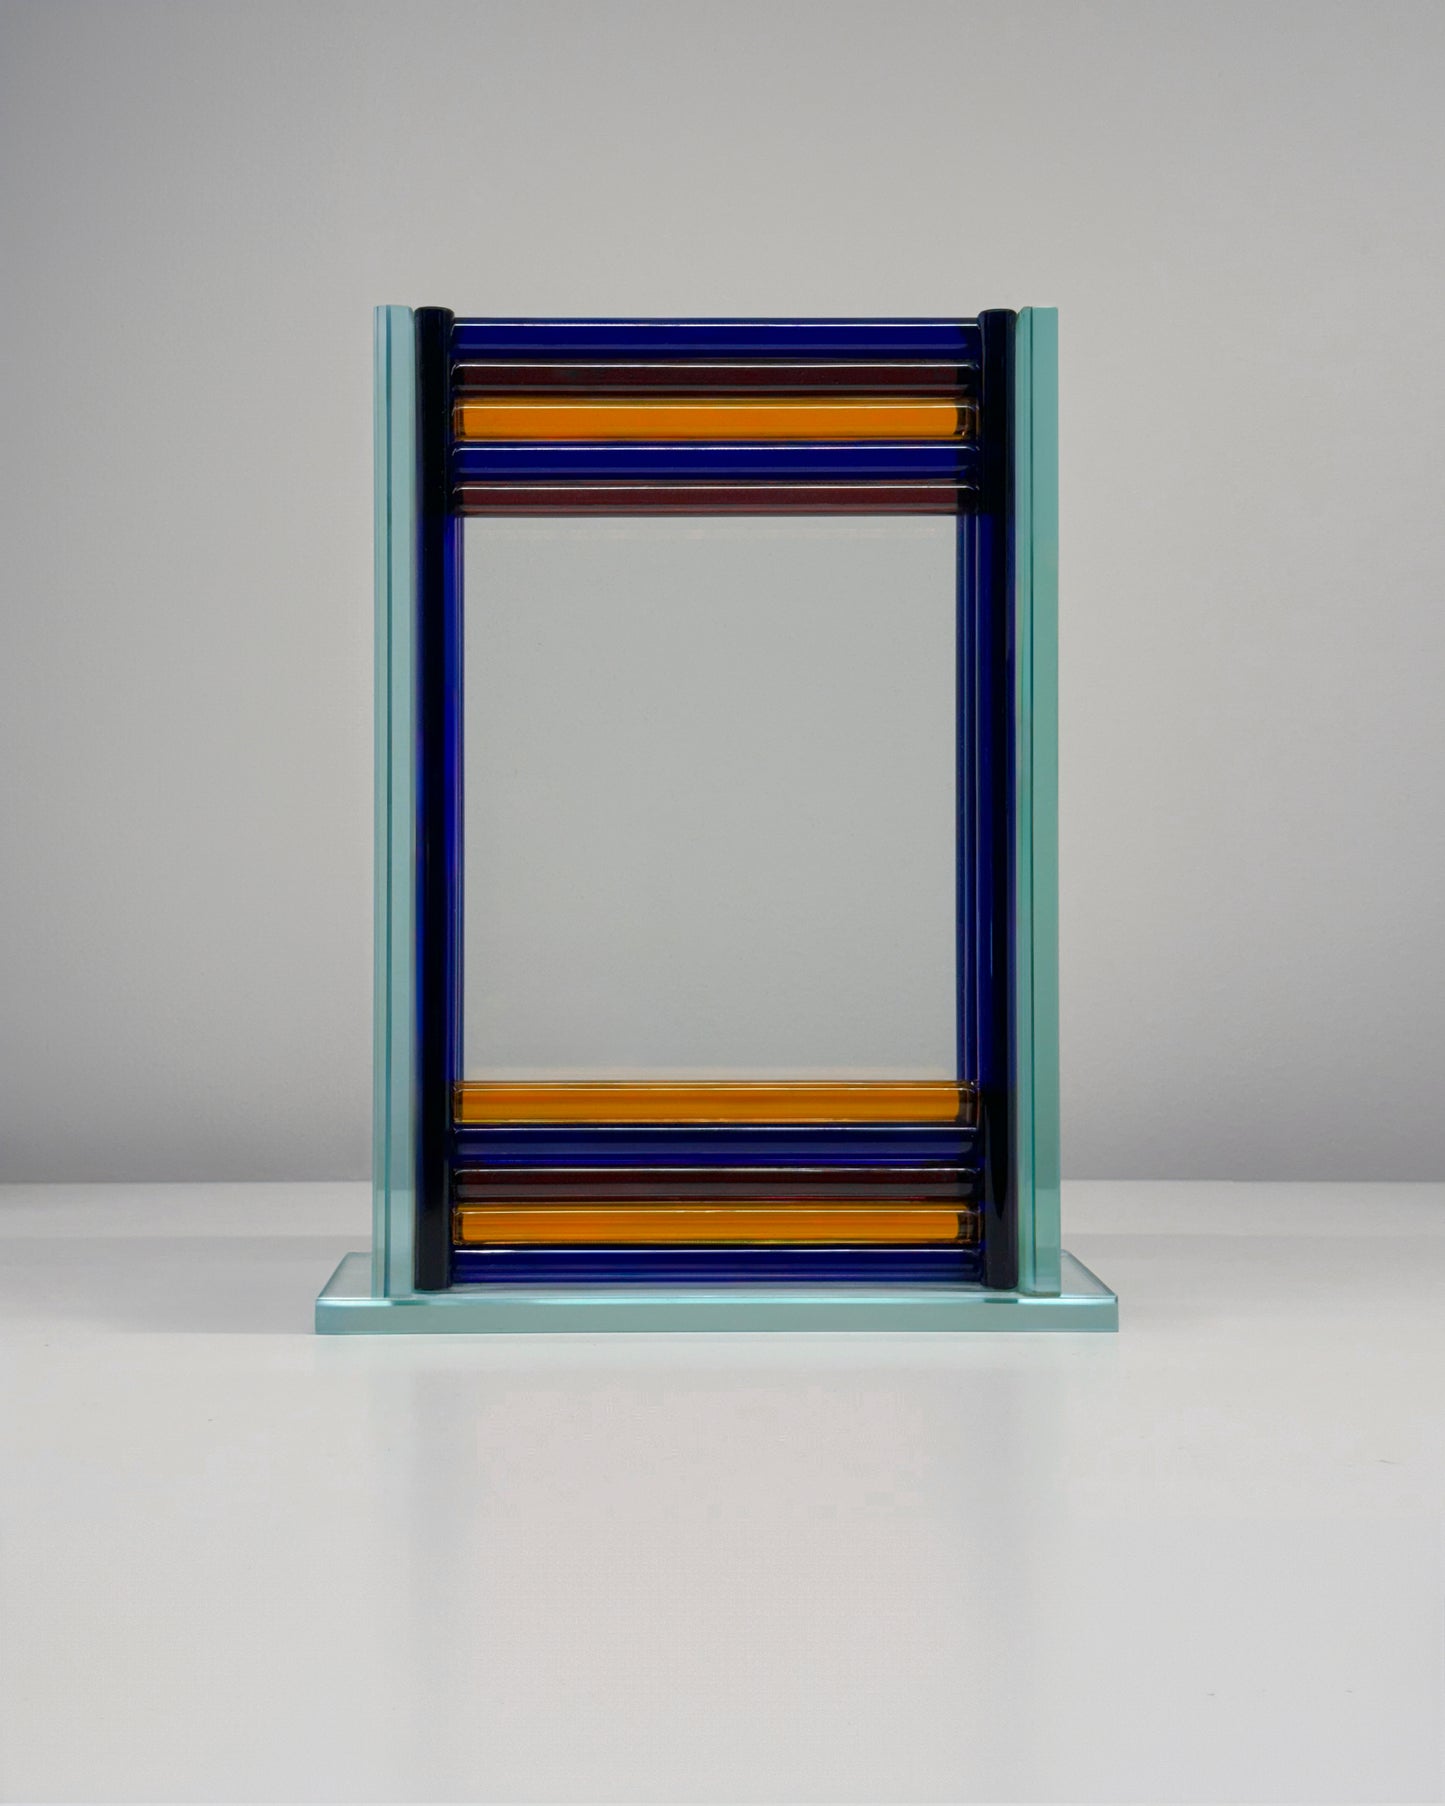 The Chroma Glass Frame